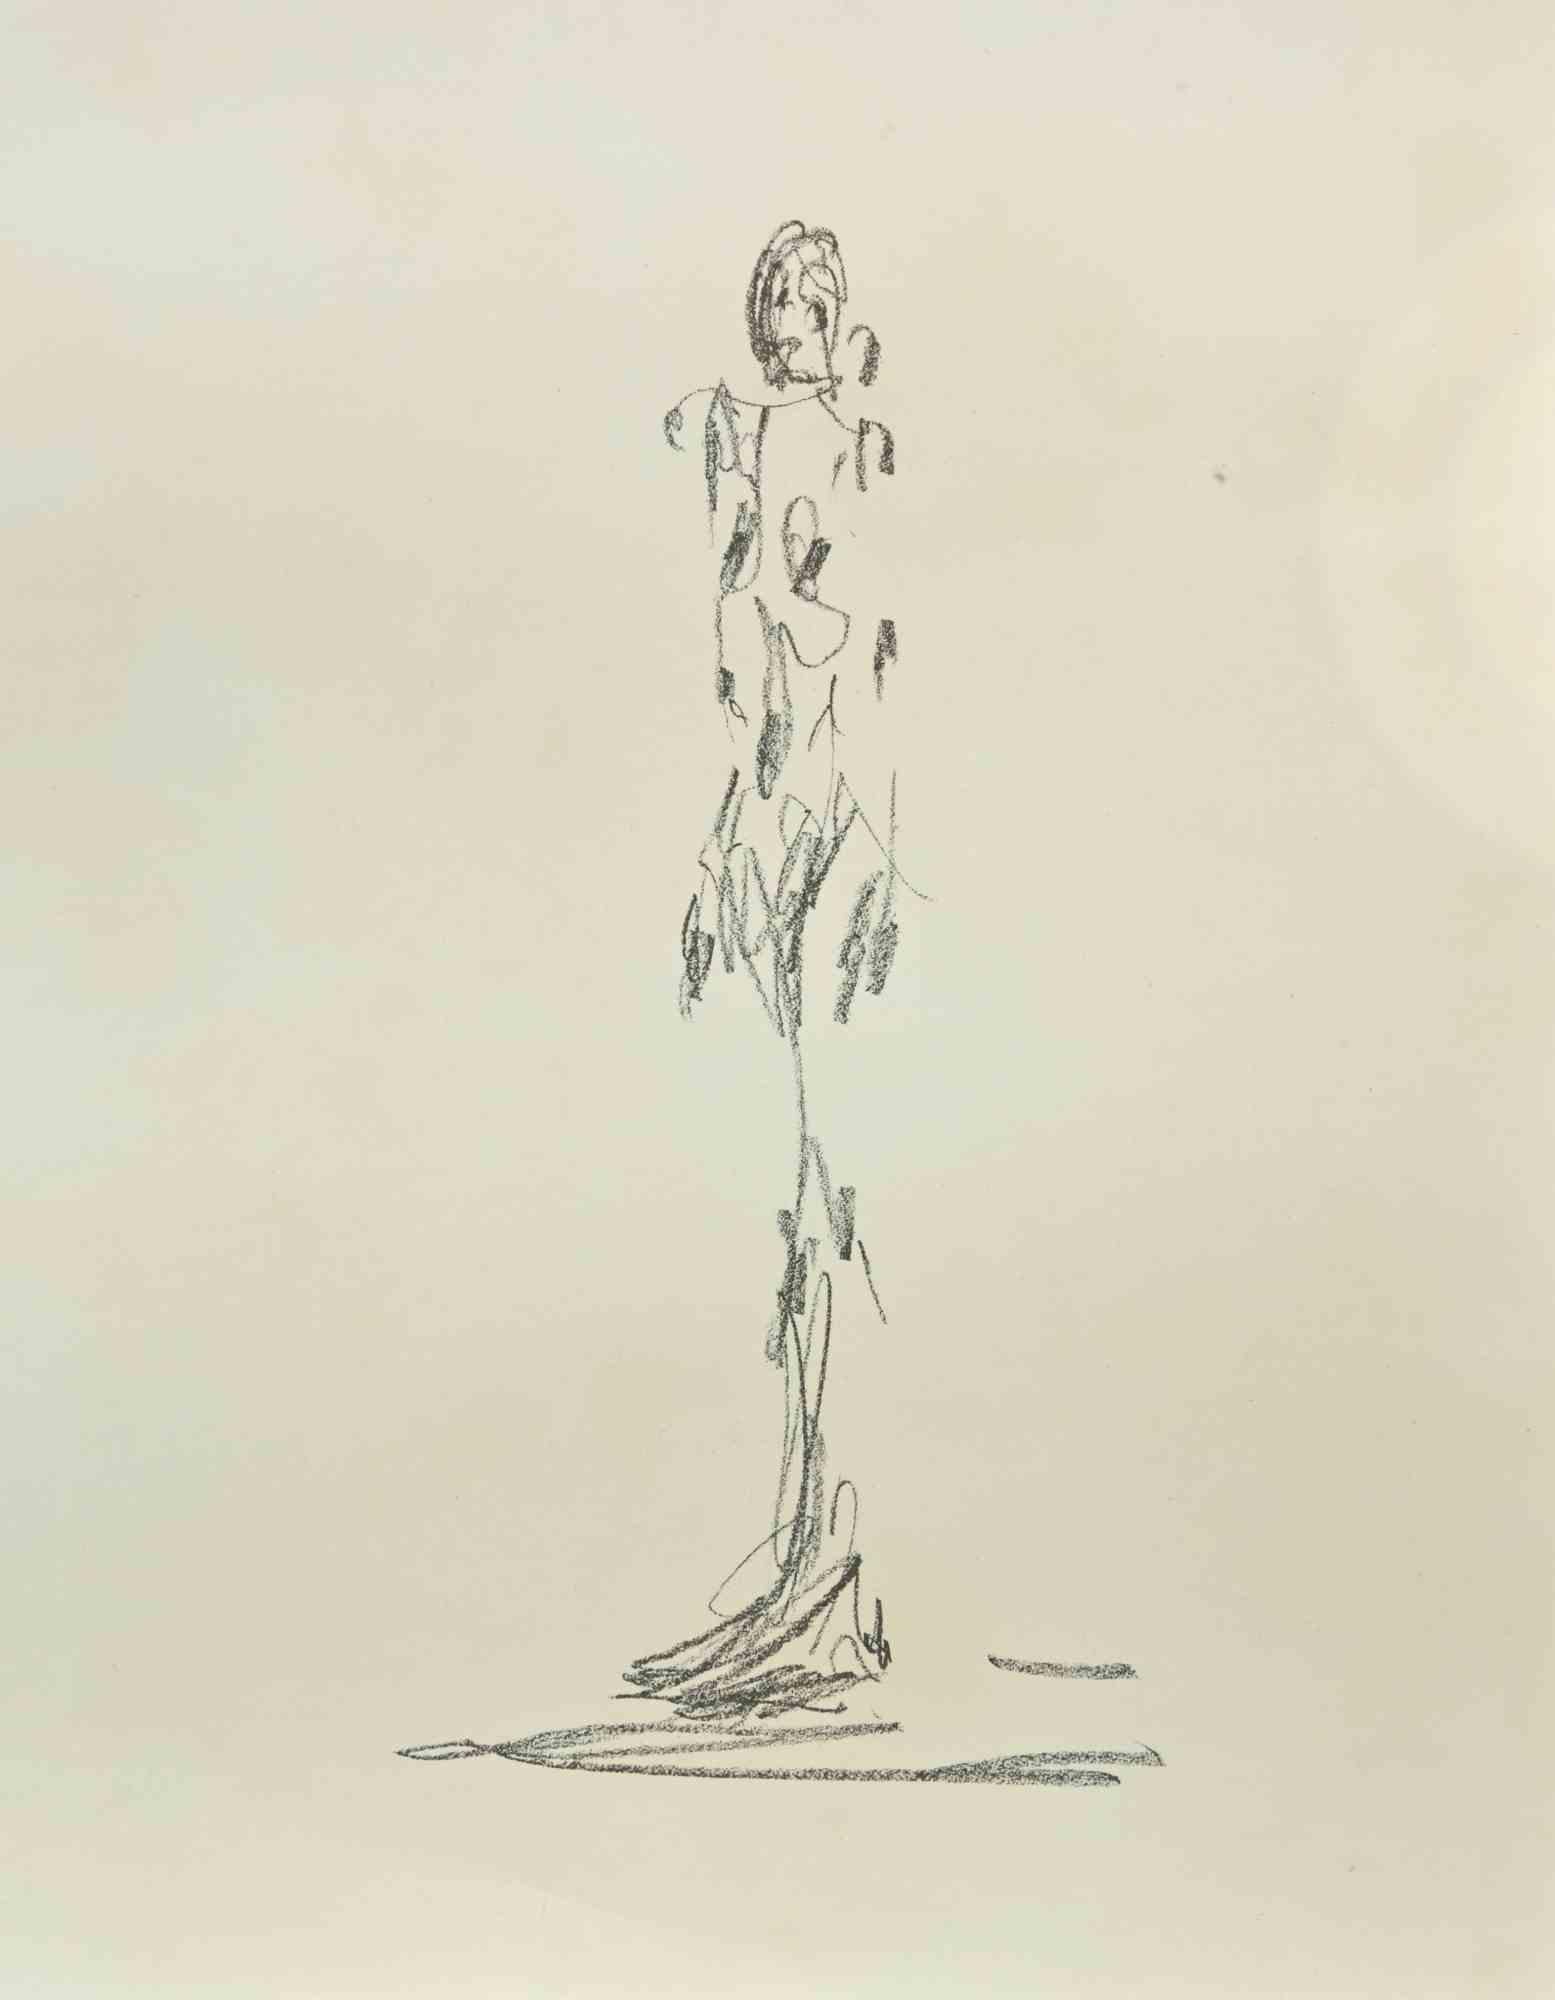 Portrait de Derriere Le Miroir est une lithographie réalisée d'après Alberto Giacometti en 1964.

L'œuvre est tirée du magazine Derriere Le Miroir.  

Imprimé par les Ateliers de Maeght, Paris, 1964.

Bonnes conditions.